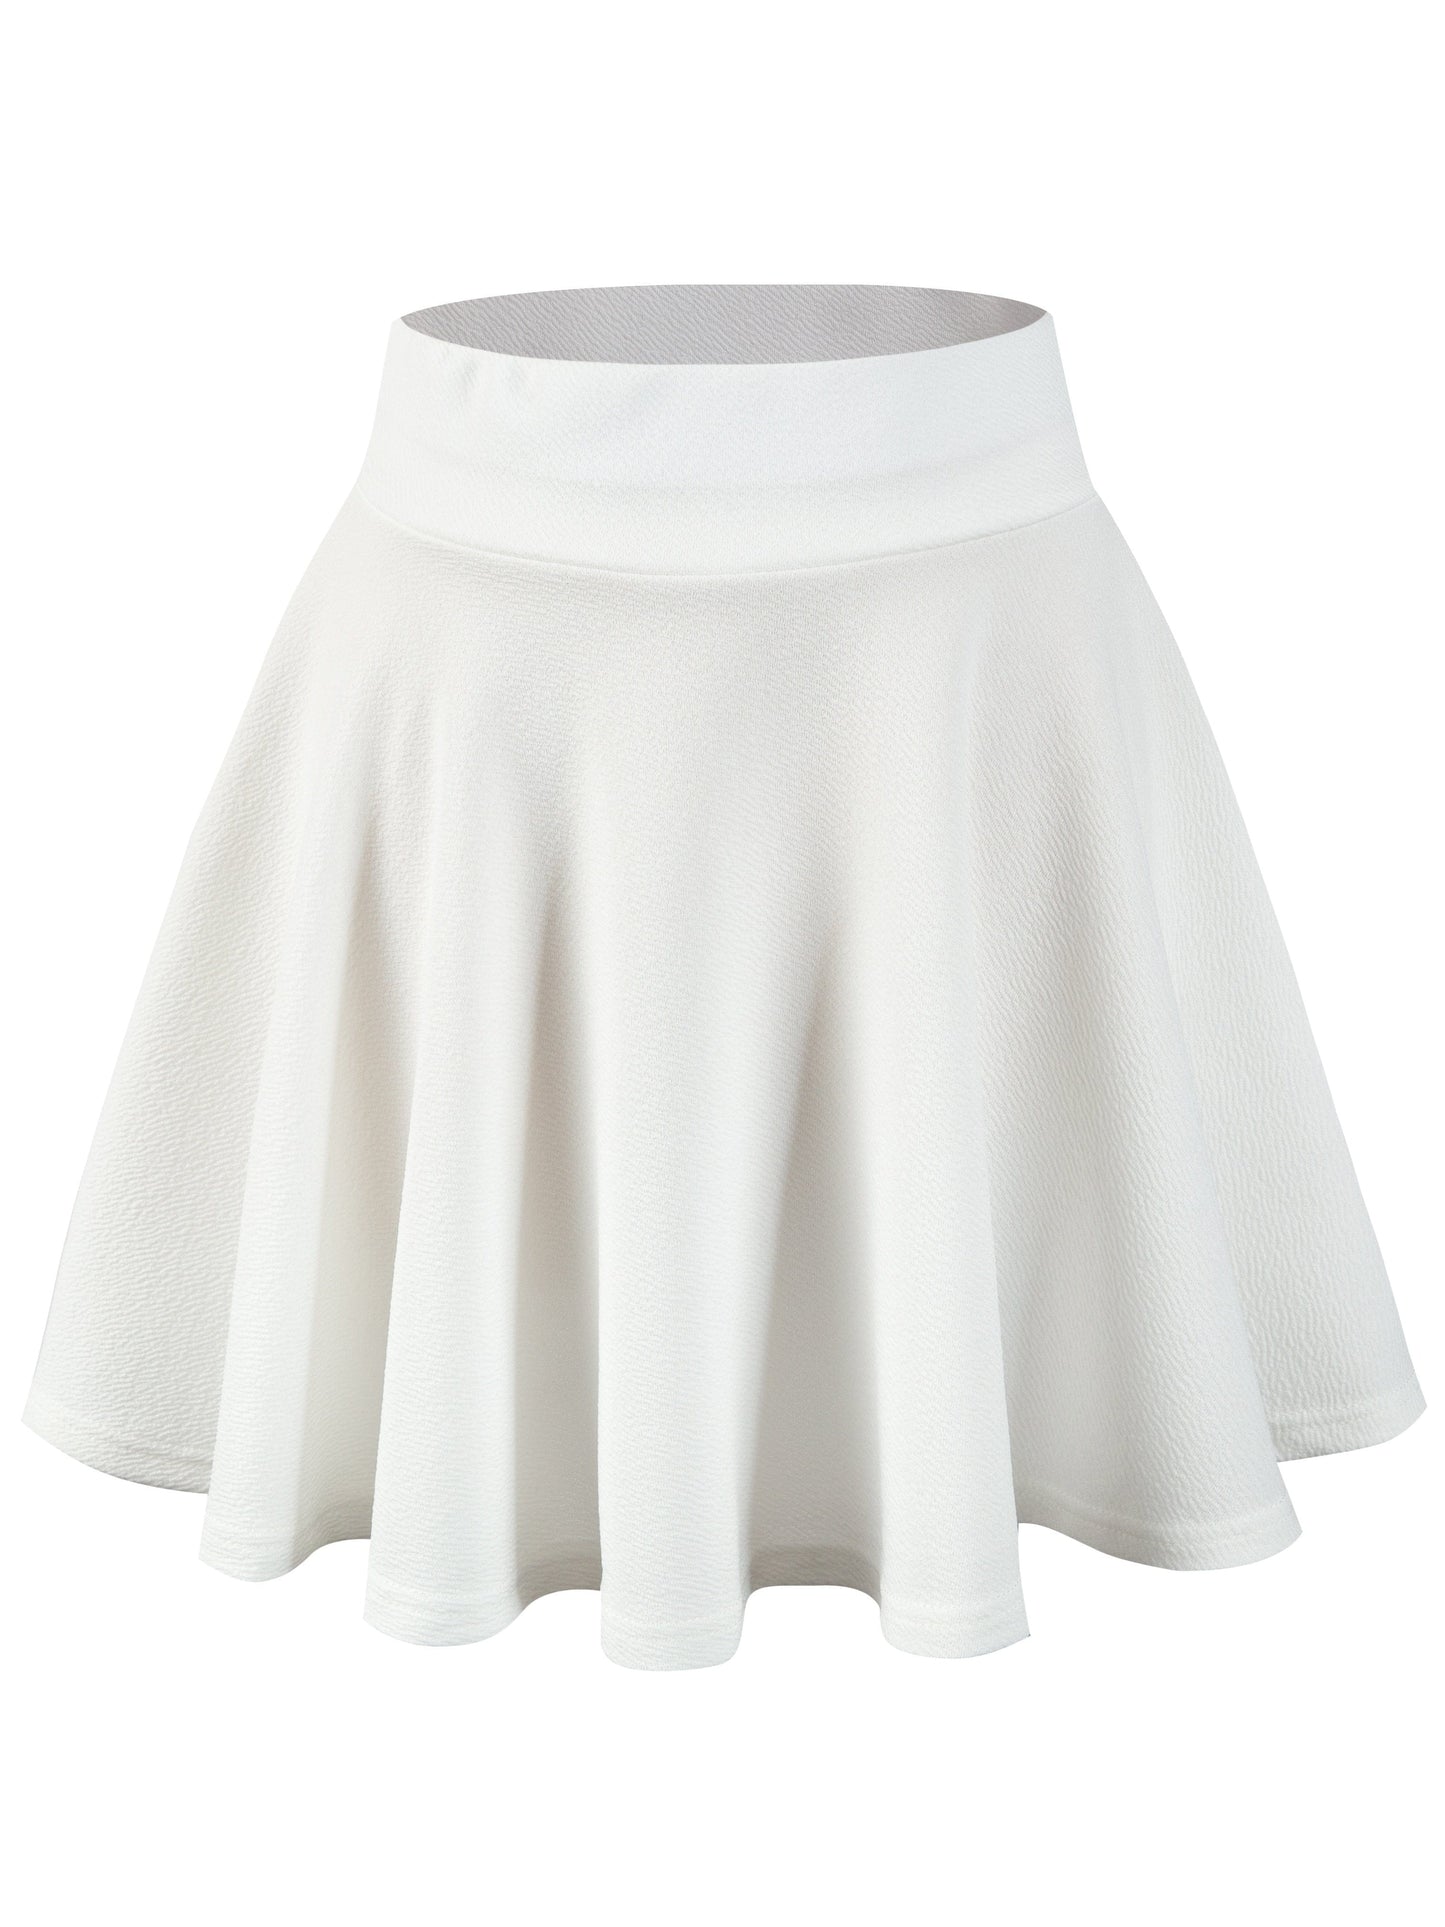 MsDressly Mini Dresses Casual Solid High Waist Pleated Skater Skirt Mini Dress DRE231012137WHIXS(2)